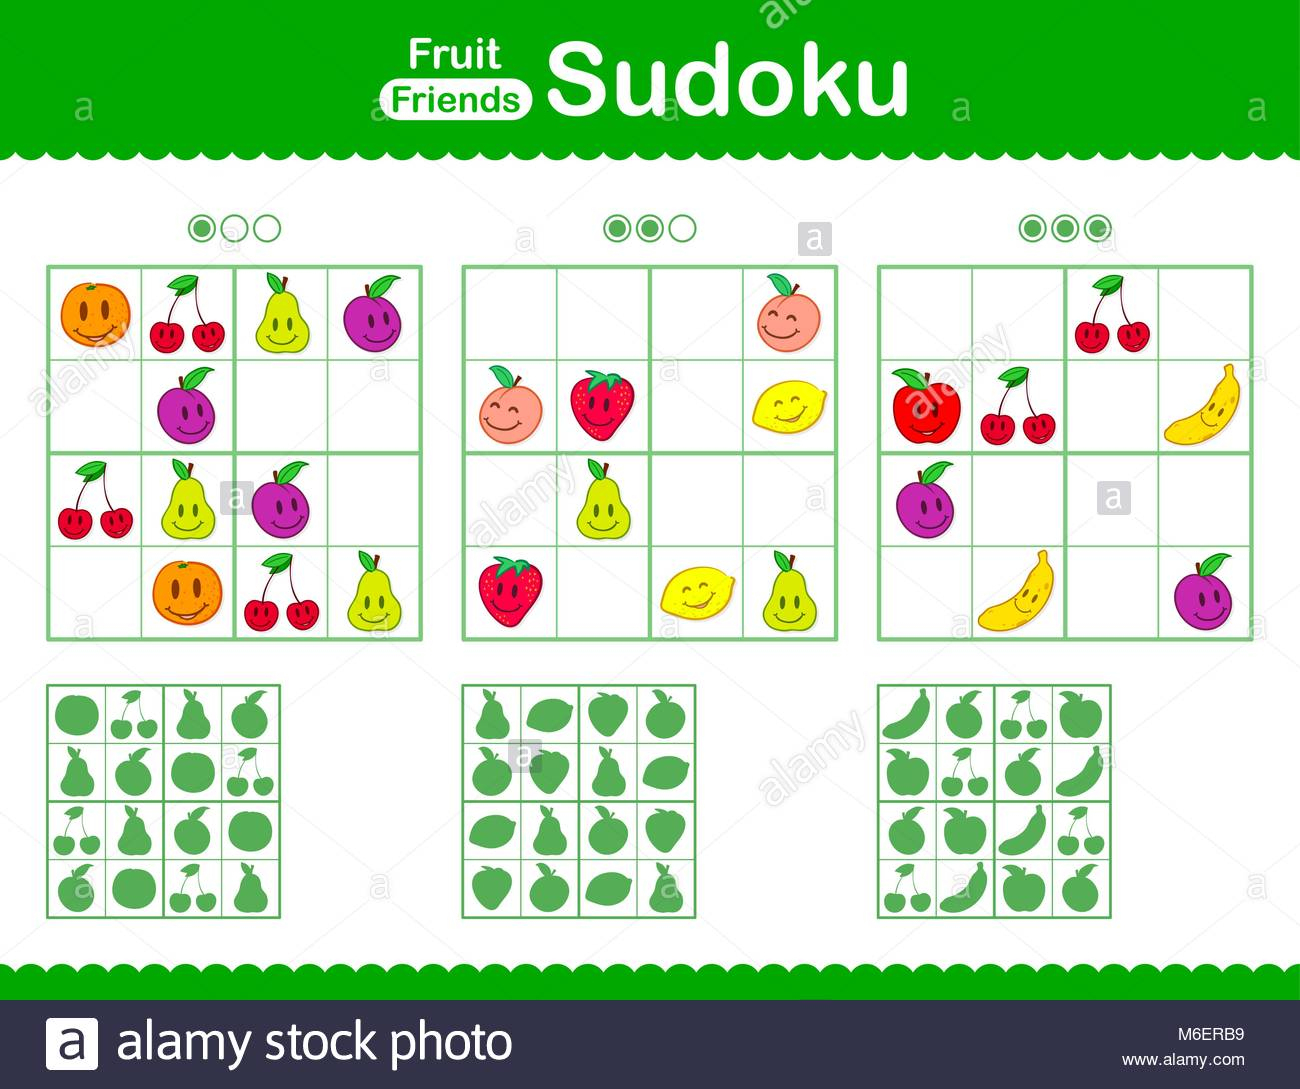 Sudoku Pour Enfants Avec Smiley Caricature Des Fruits Dans tout Sudoku Pour Enfant